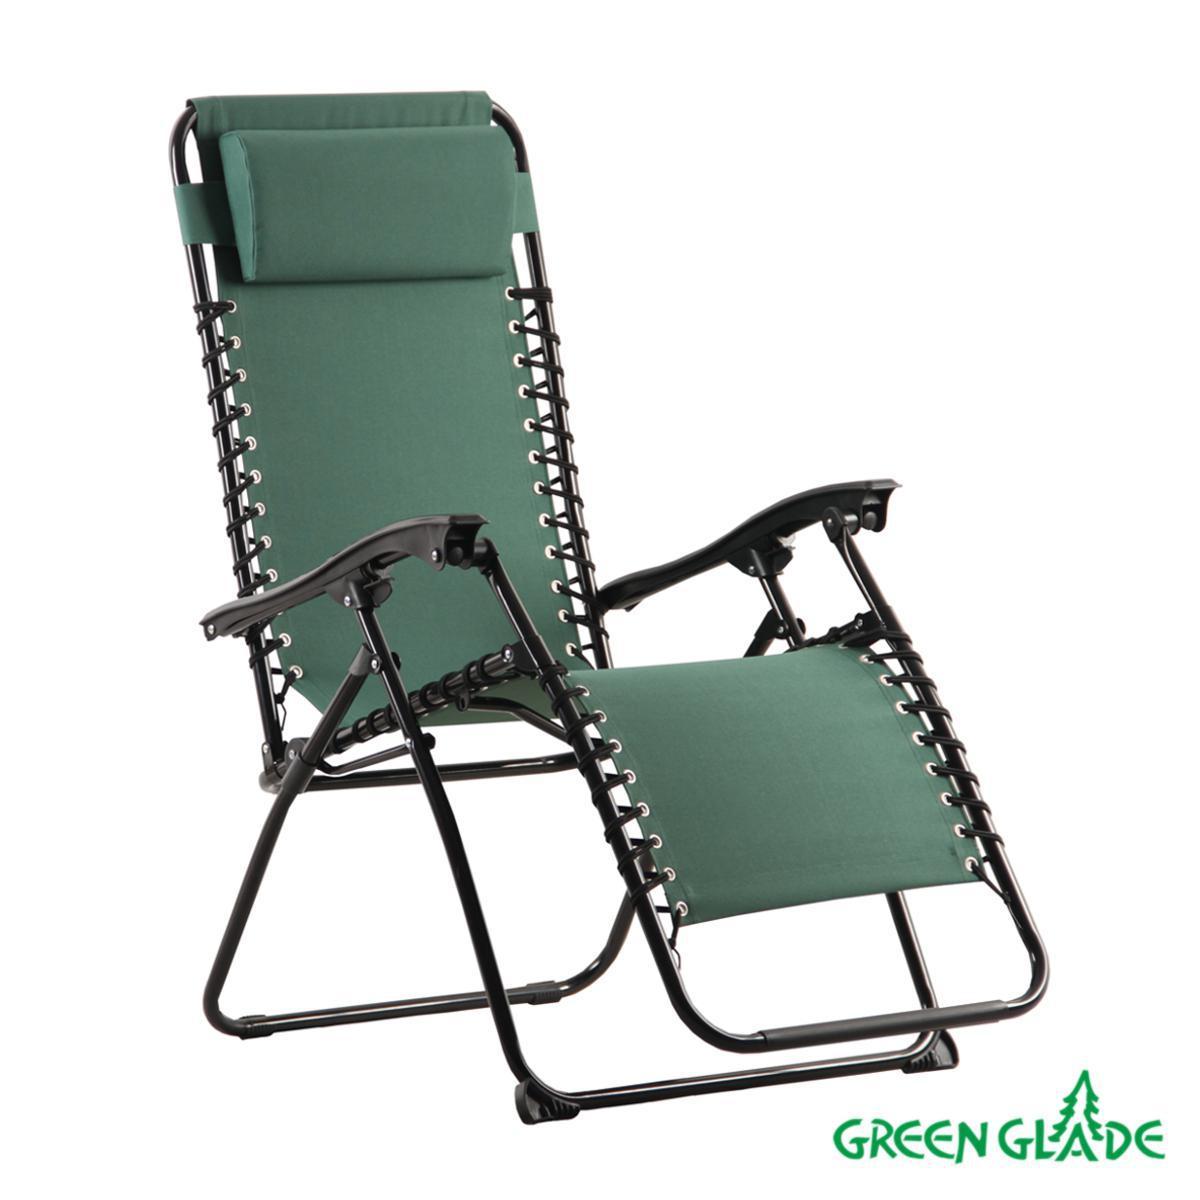 Купить складные сиденья. Кресло складное Green Glade 2306. Кресло складное Green Glade м3209. Шезлонг Green Glade 3209, до 120 кг. Кресло-шезлонг двух позиционное 156 х 60 х 82 см, Camping PALISAD.